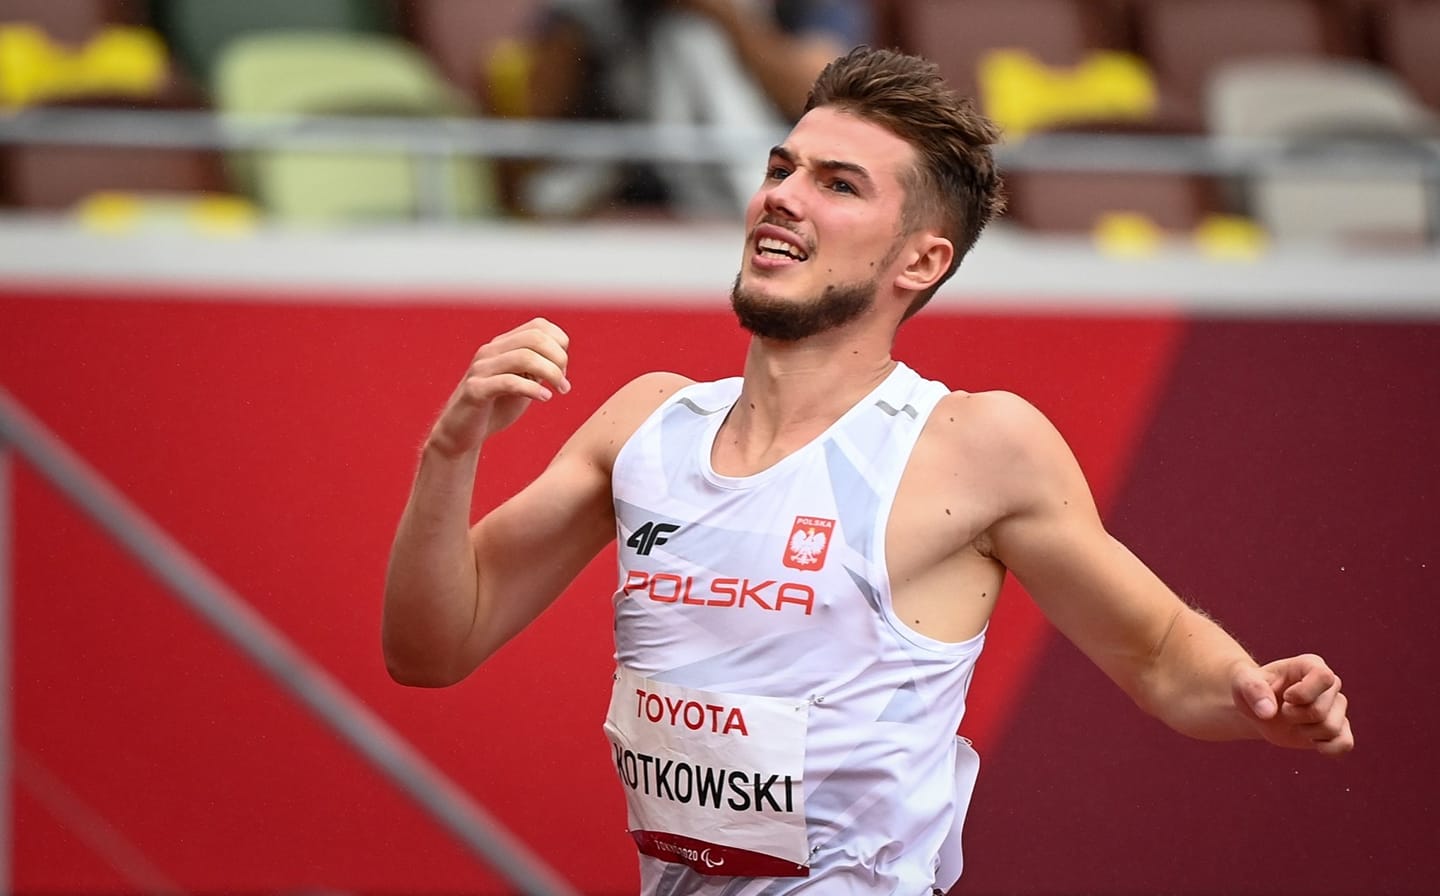 Michał Kotkowski bije rekord życiowy na 200 m (T37) ponownie! 23.12 s 1 - Start Poznań